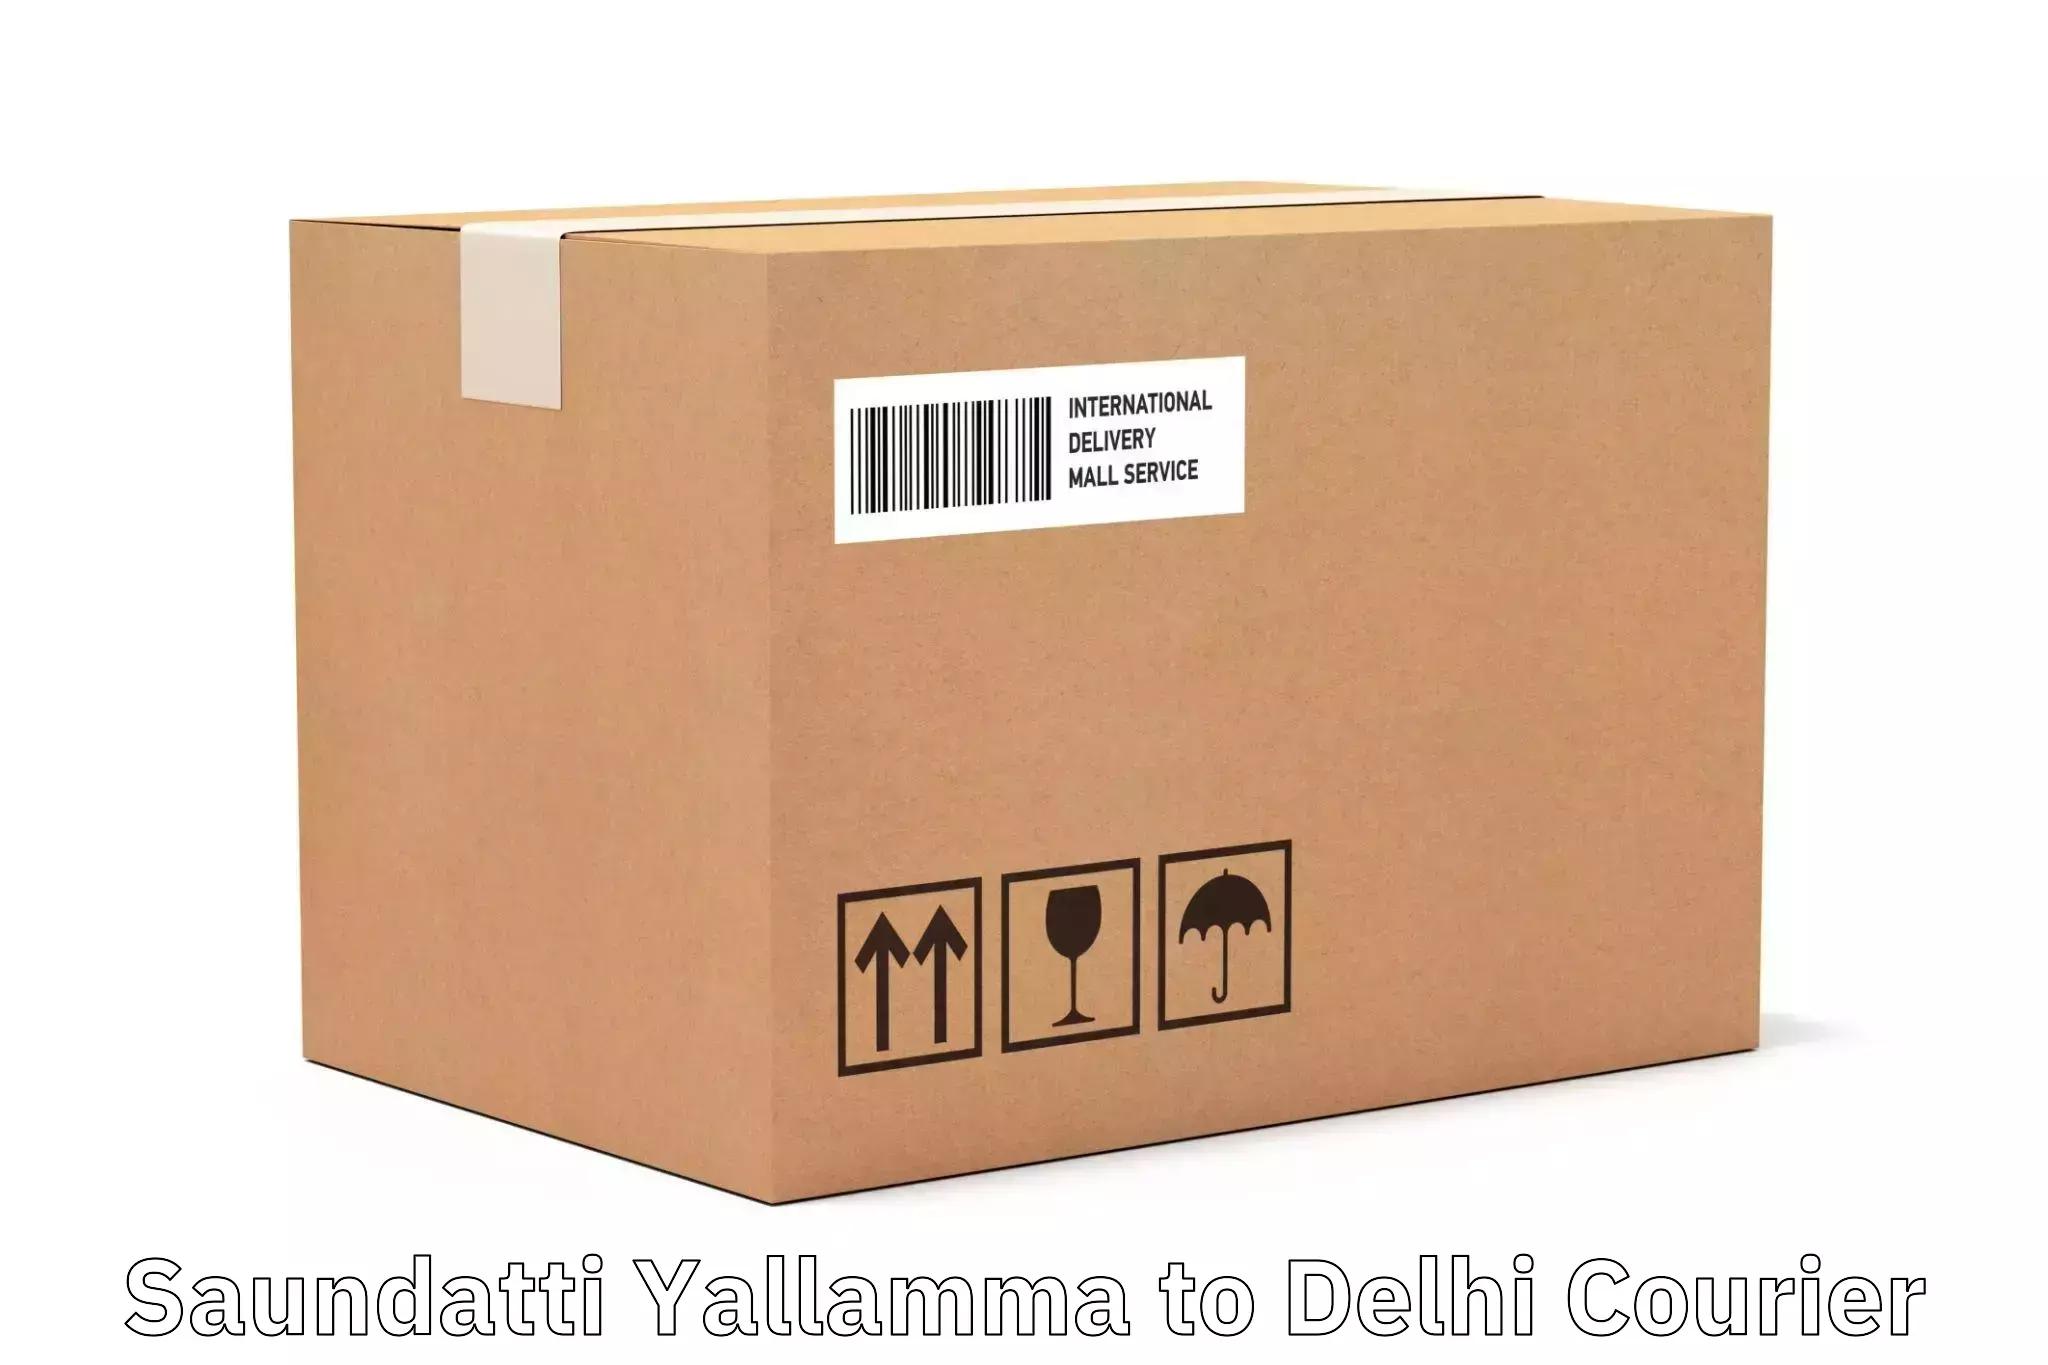 Professional parcel services Saundatti Yallamma to Delhi